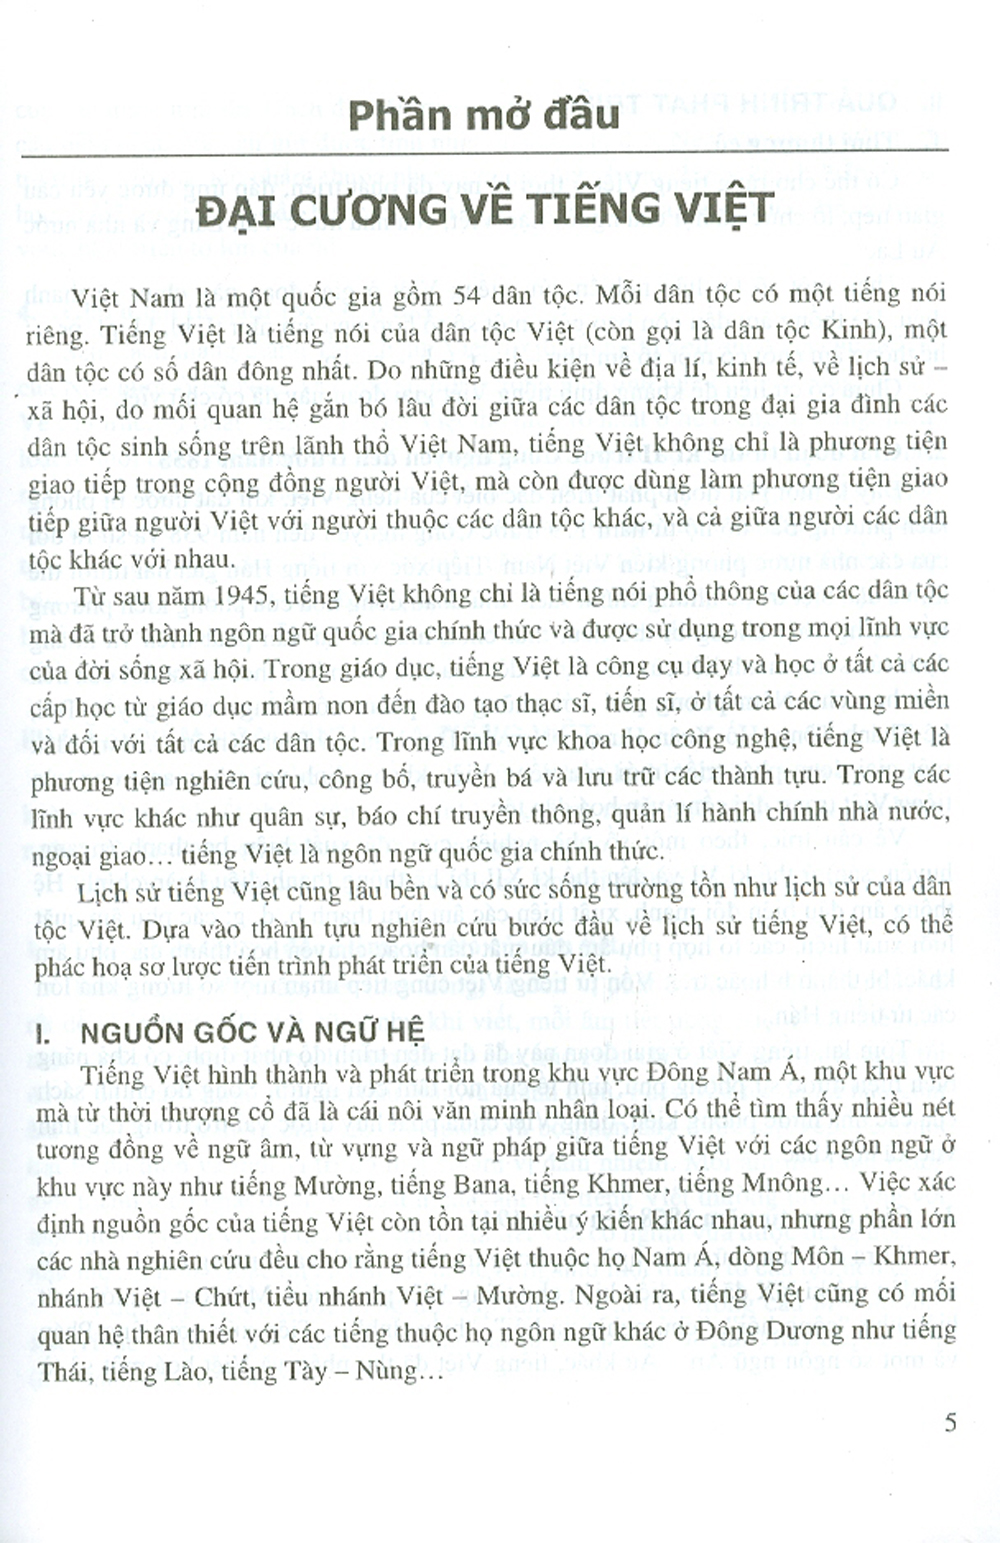 Giáo Trình Tiếng Việt Và Tiếng Việt Thực Hành